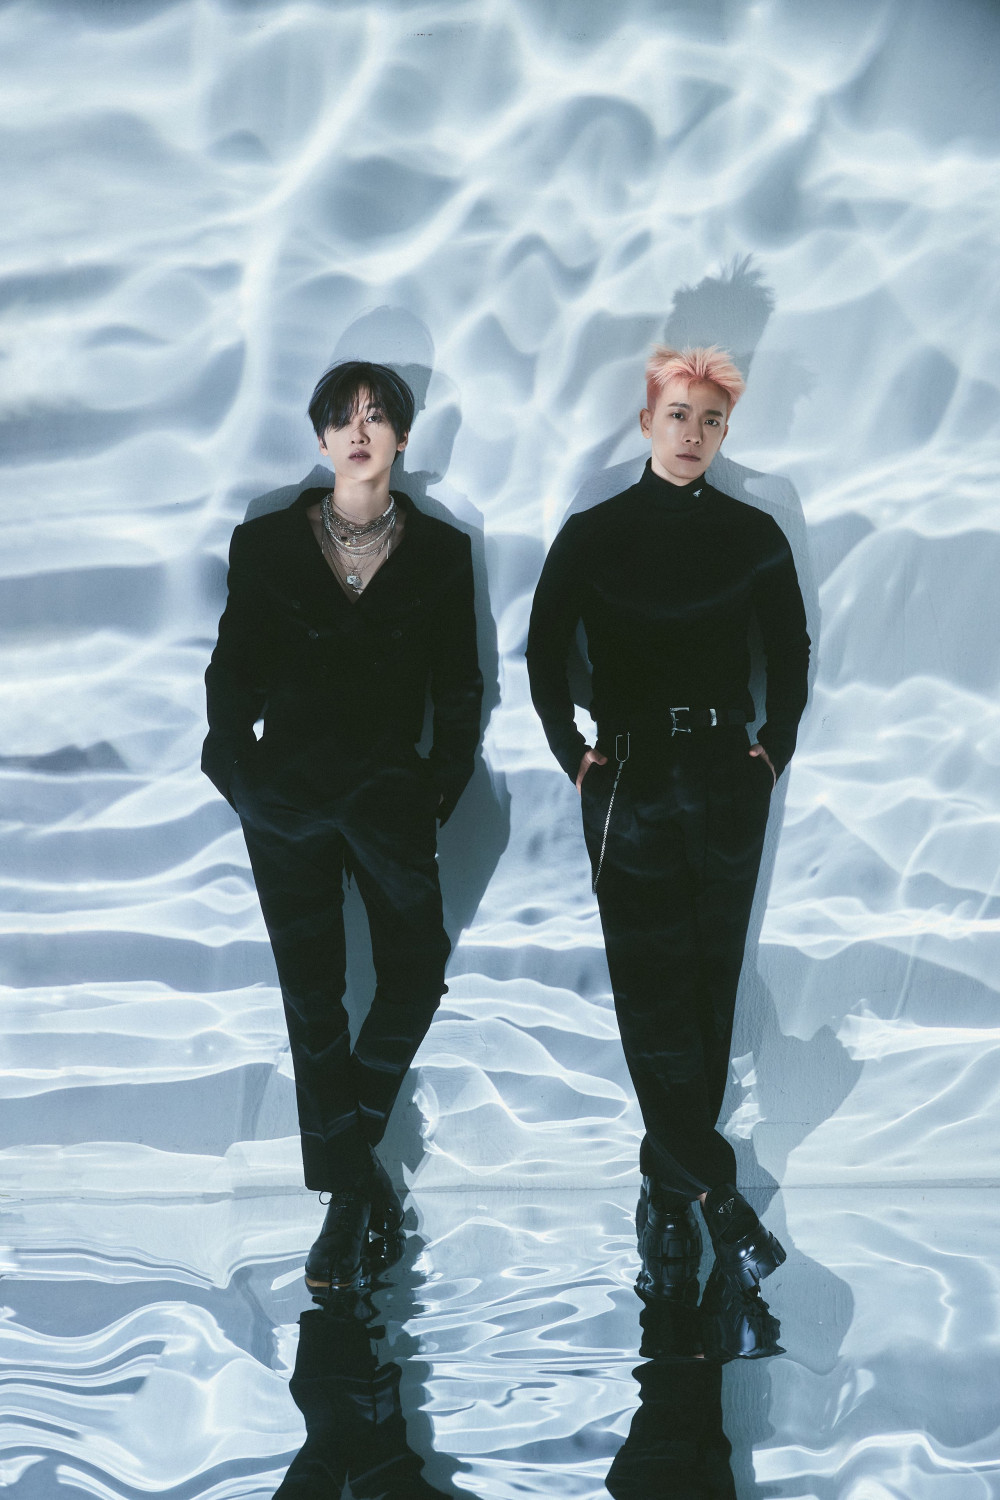 [Камбэк] Super Junior D&E (Донхэ и Ынхёк): попурри треков